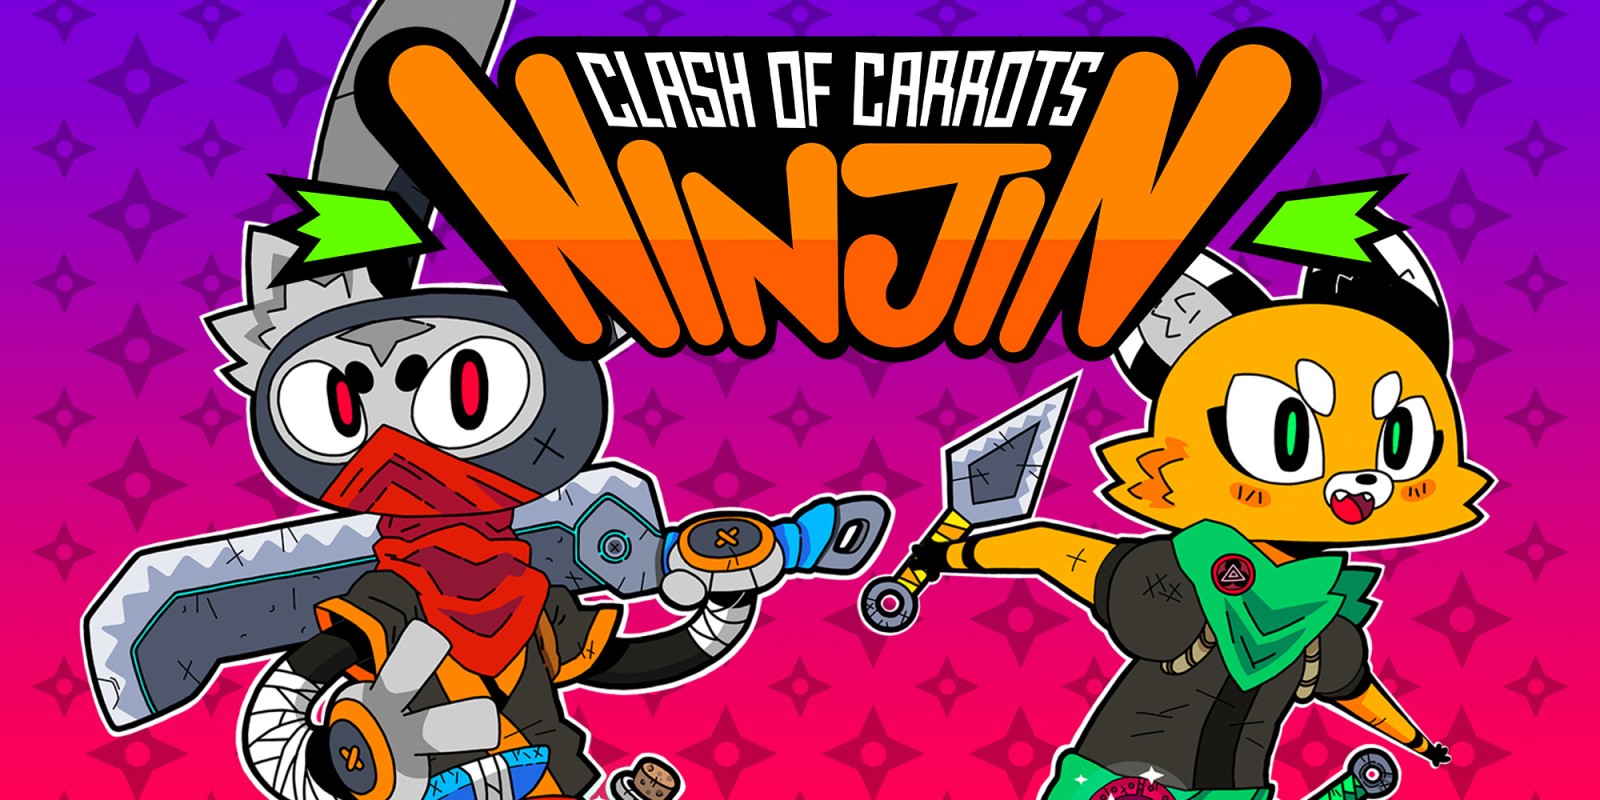 Ninjin: Clash of Carrots Nintendo Switch review